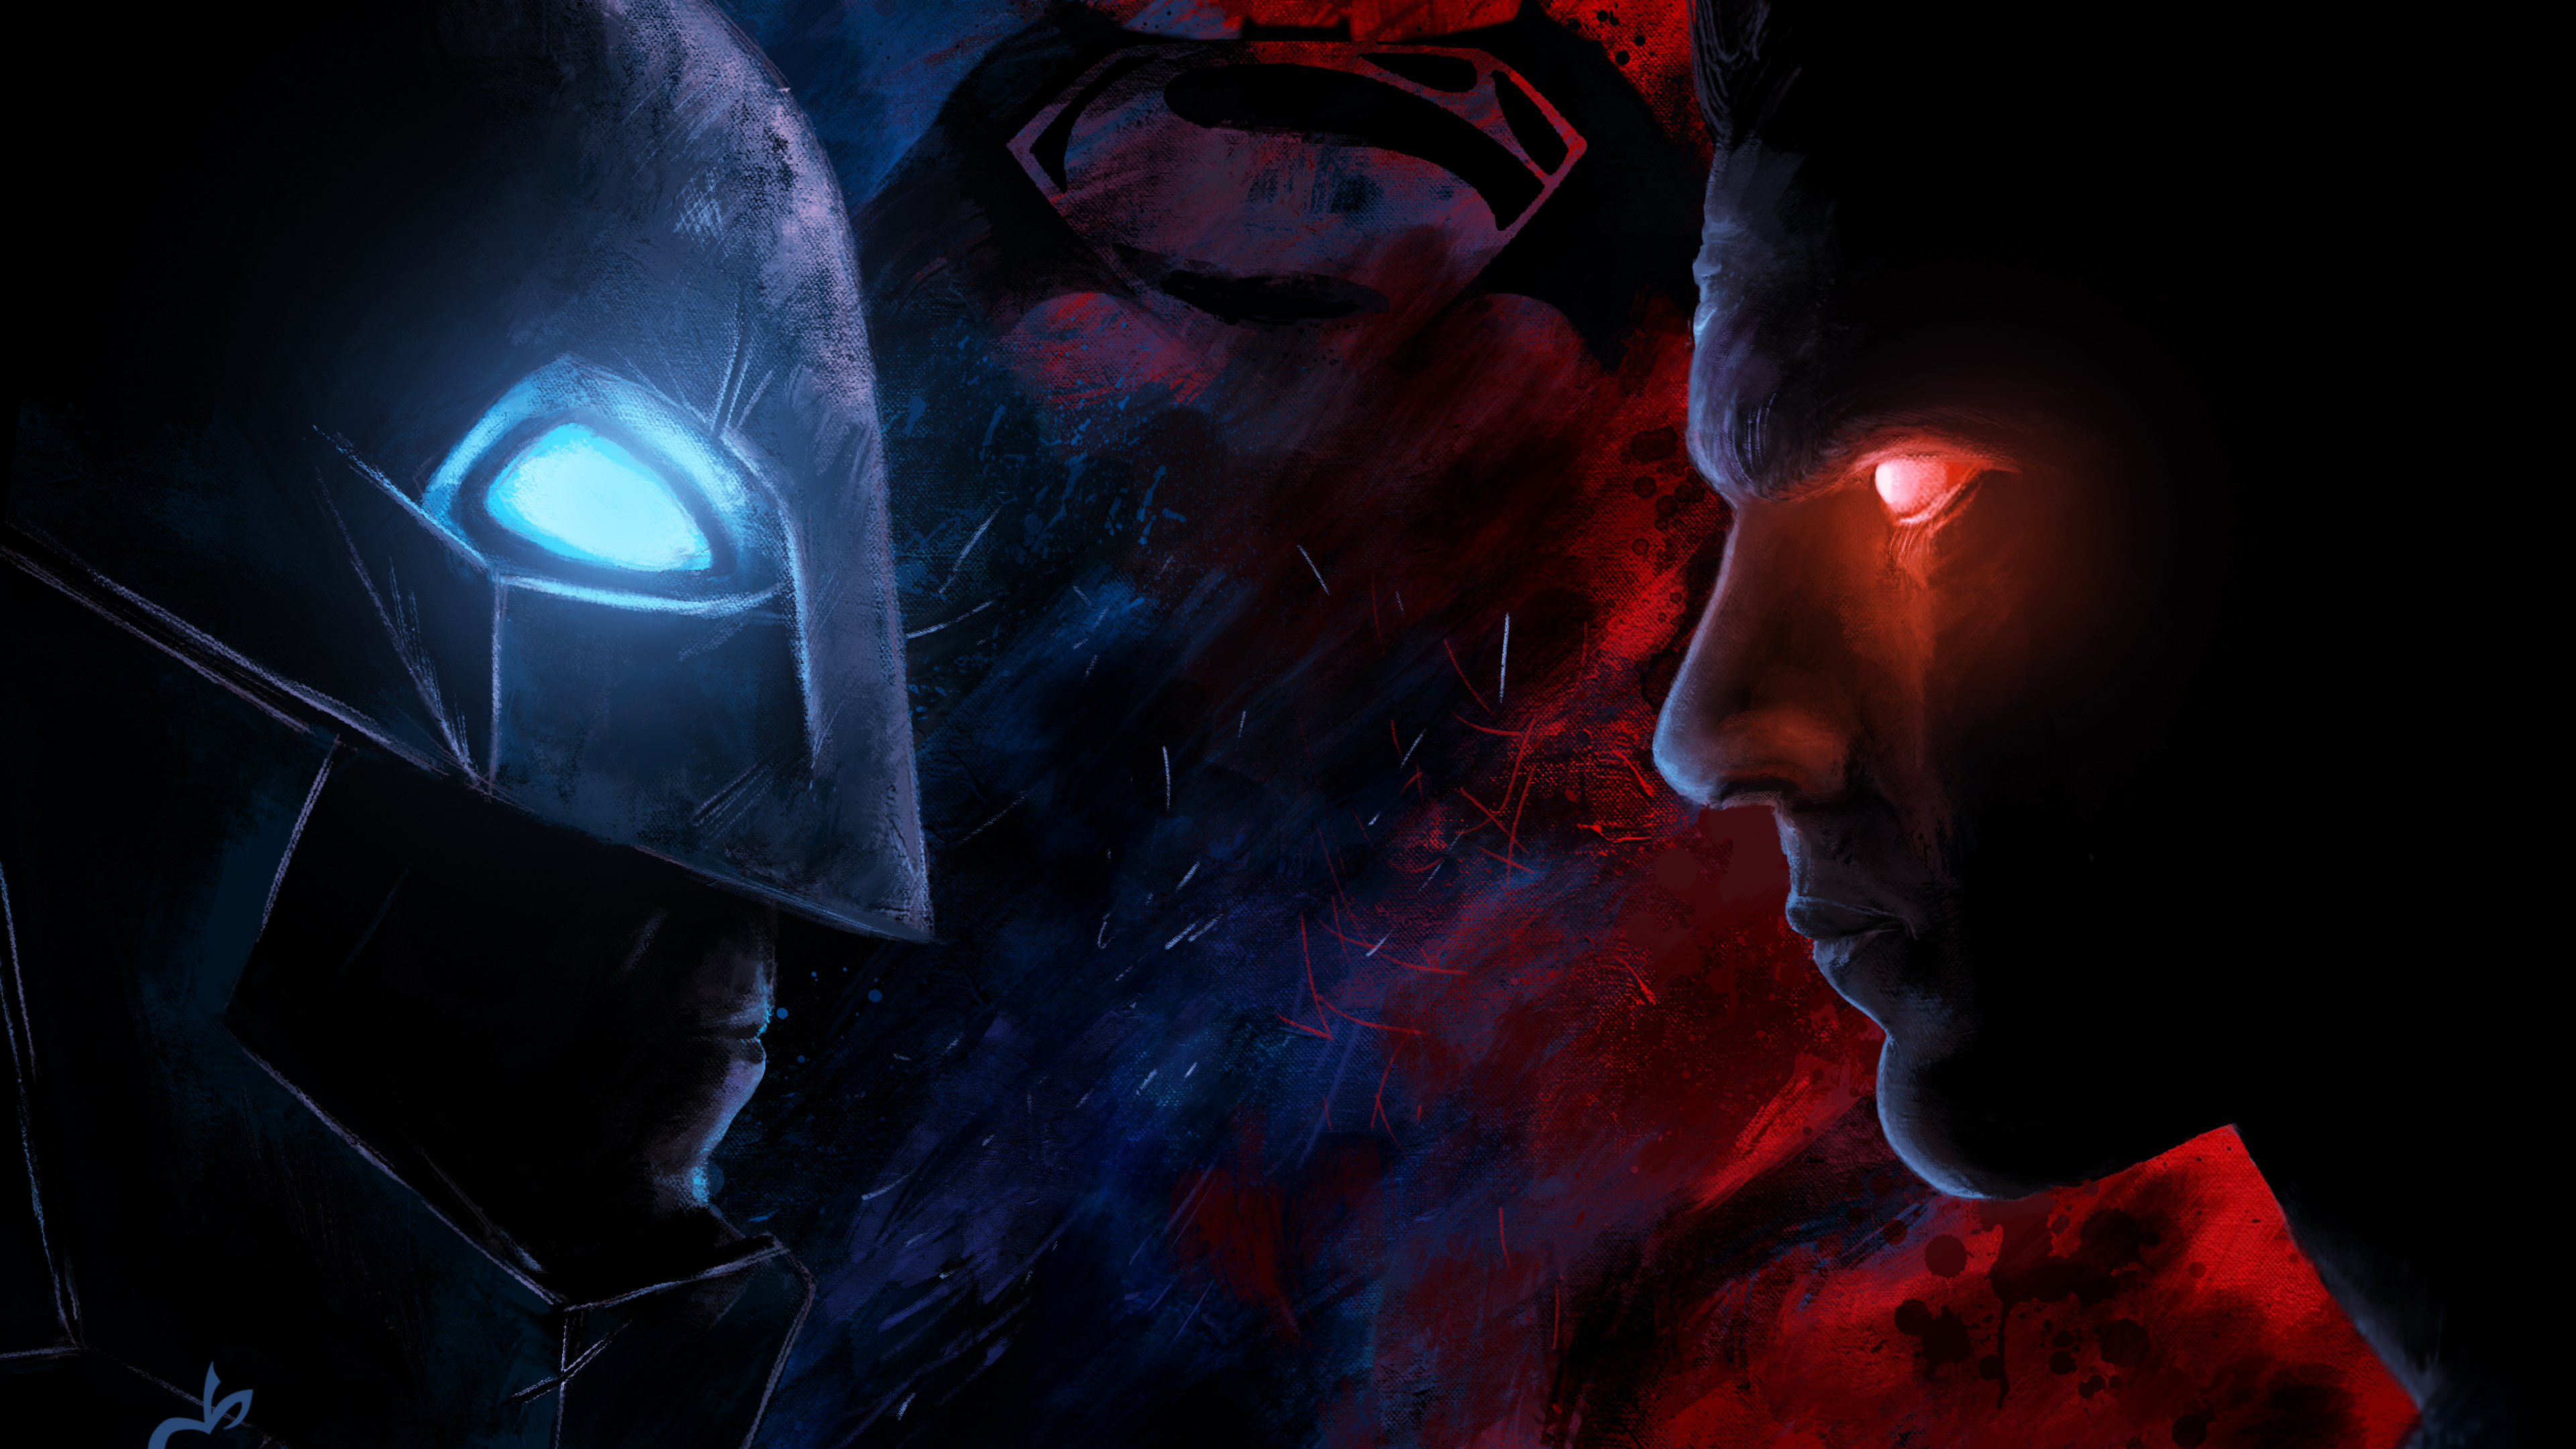 batman vs superman fond d'écran 4k,ténèbres,personnage fictif,illustration,espace,oeuvre de cg